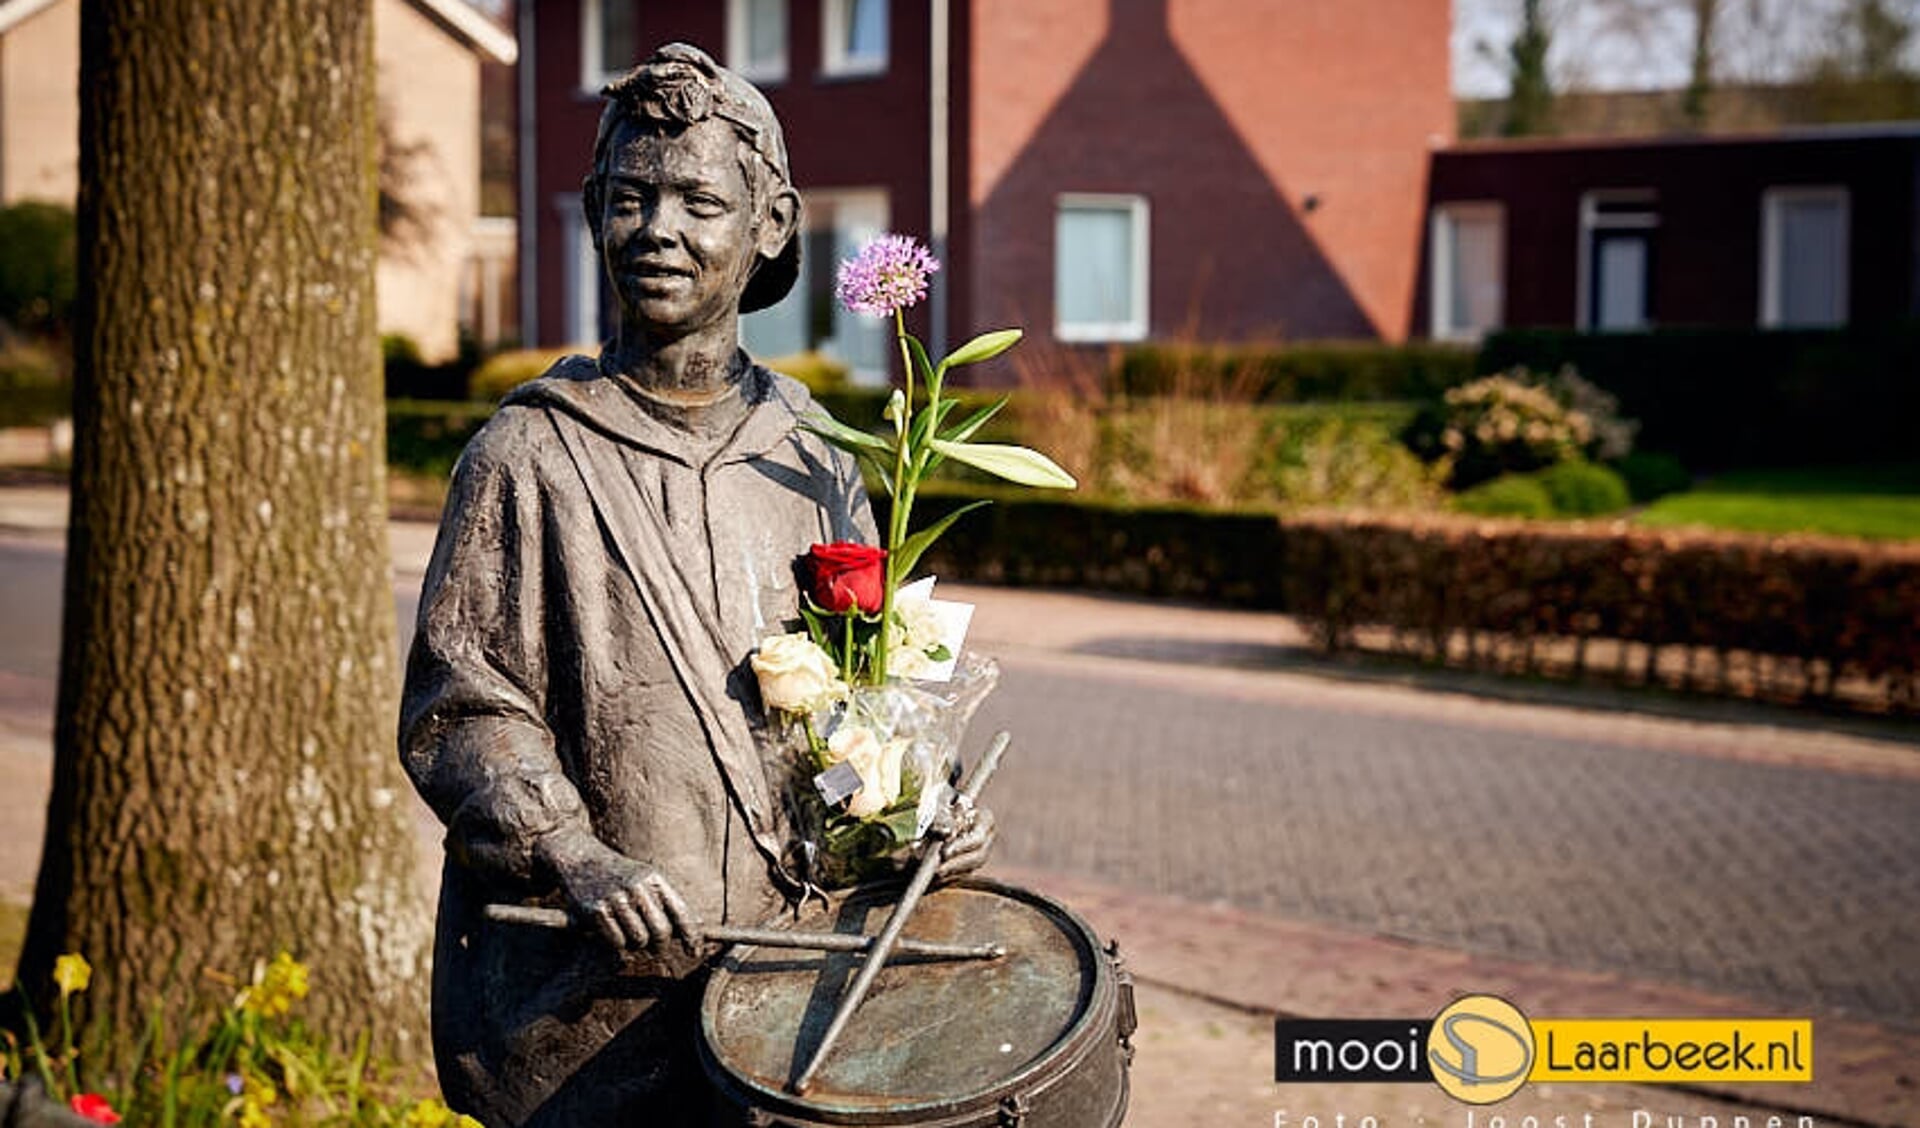 Bij het kunstwerk 'Toekomst door samenspel' aan het Servaassplein in Lieshout werden dinsdag al bloemen gelegd vanwege het overlijden van de 29-jarige (uit Lieshout afkomstige) Guus Konings. Het beeld van de jonge tamboer (r) is naar zijn jonge evenbeeld gemaakt